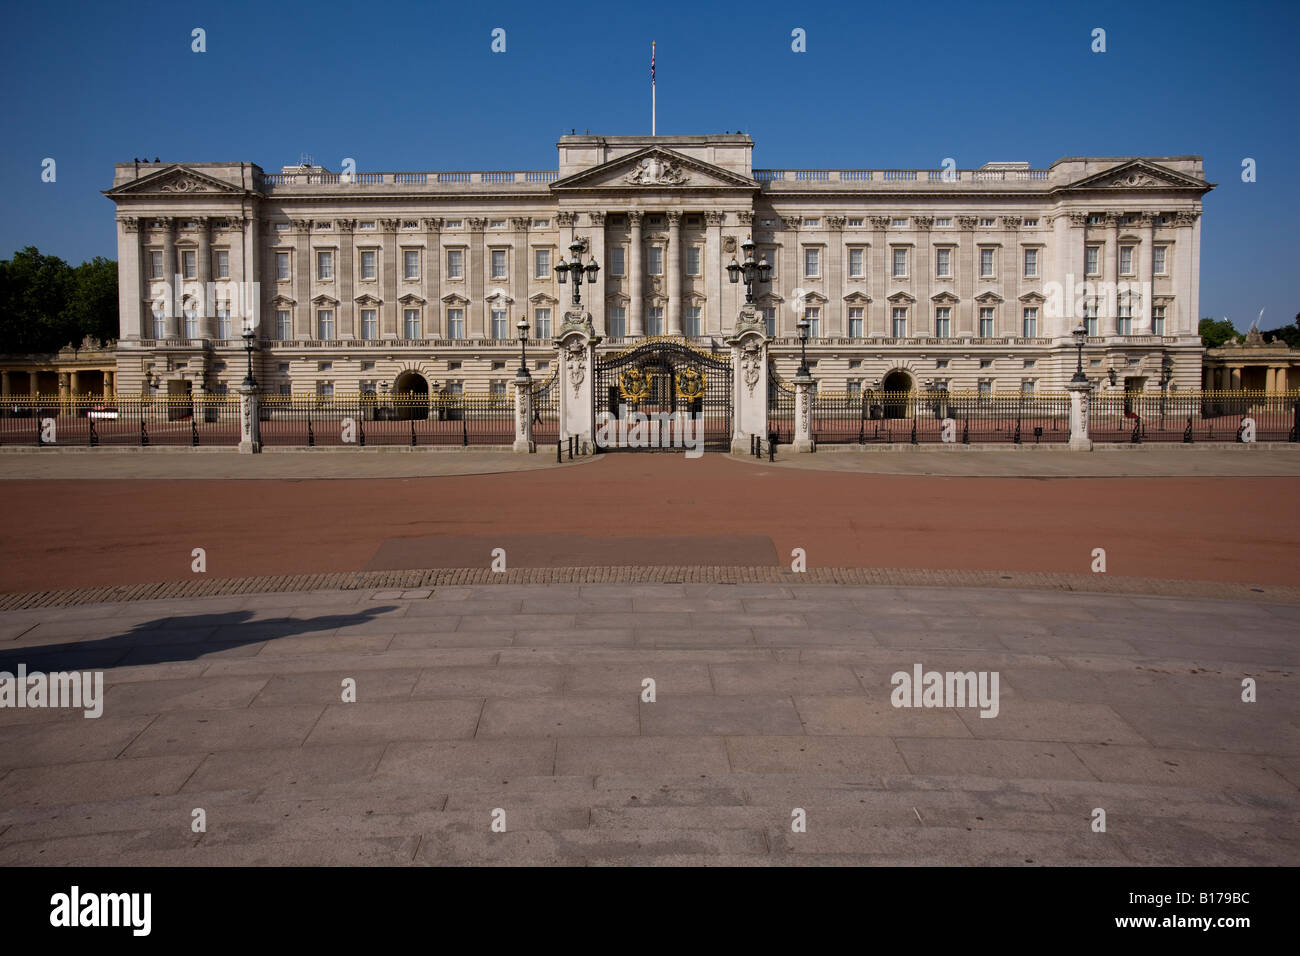 Le palais de Buckingham, résidence royale de la reine Elizabeth II lors de Londres. Banque D'Images